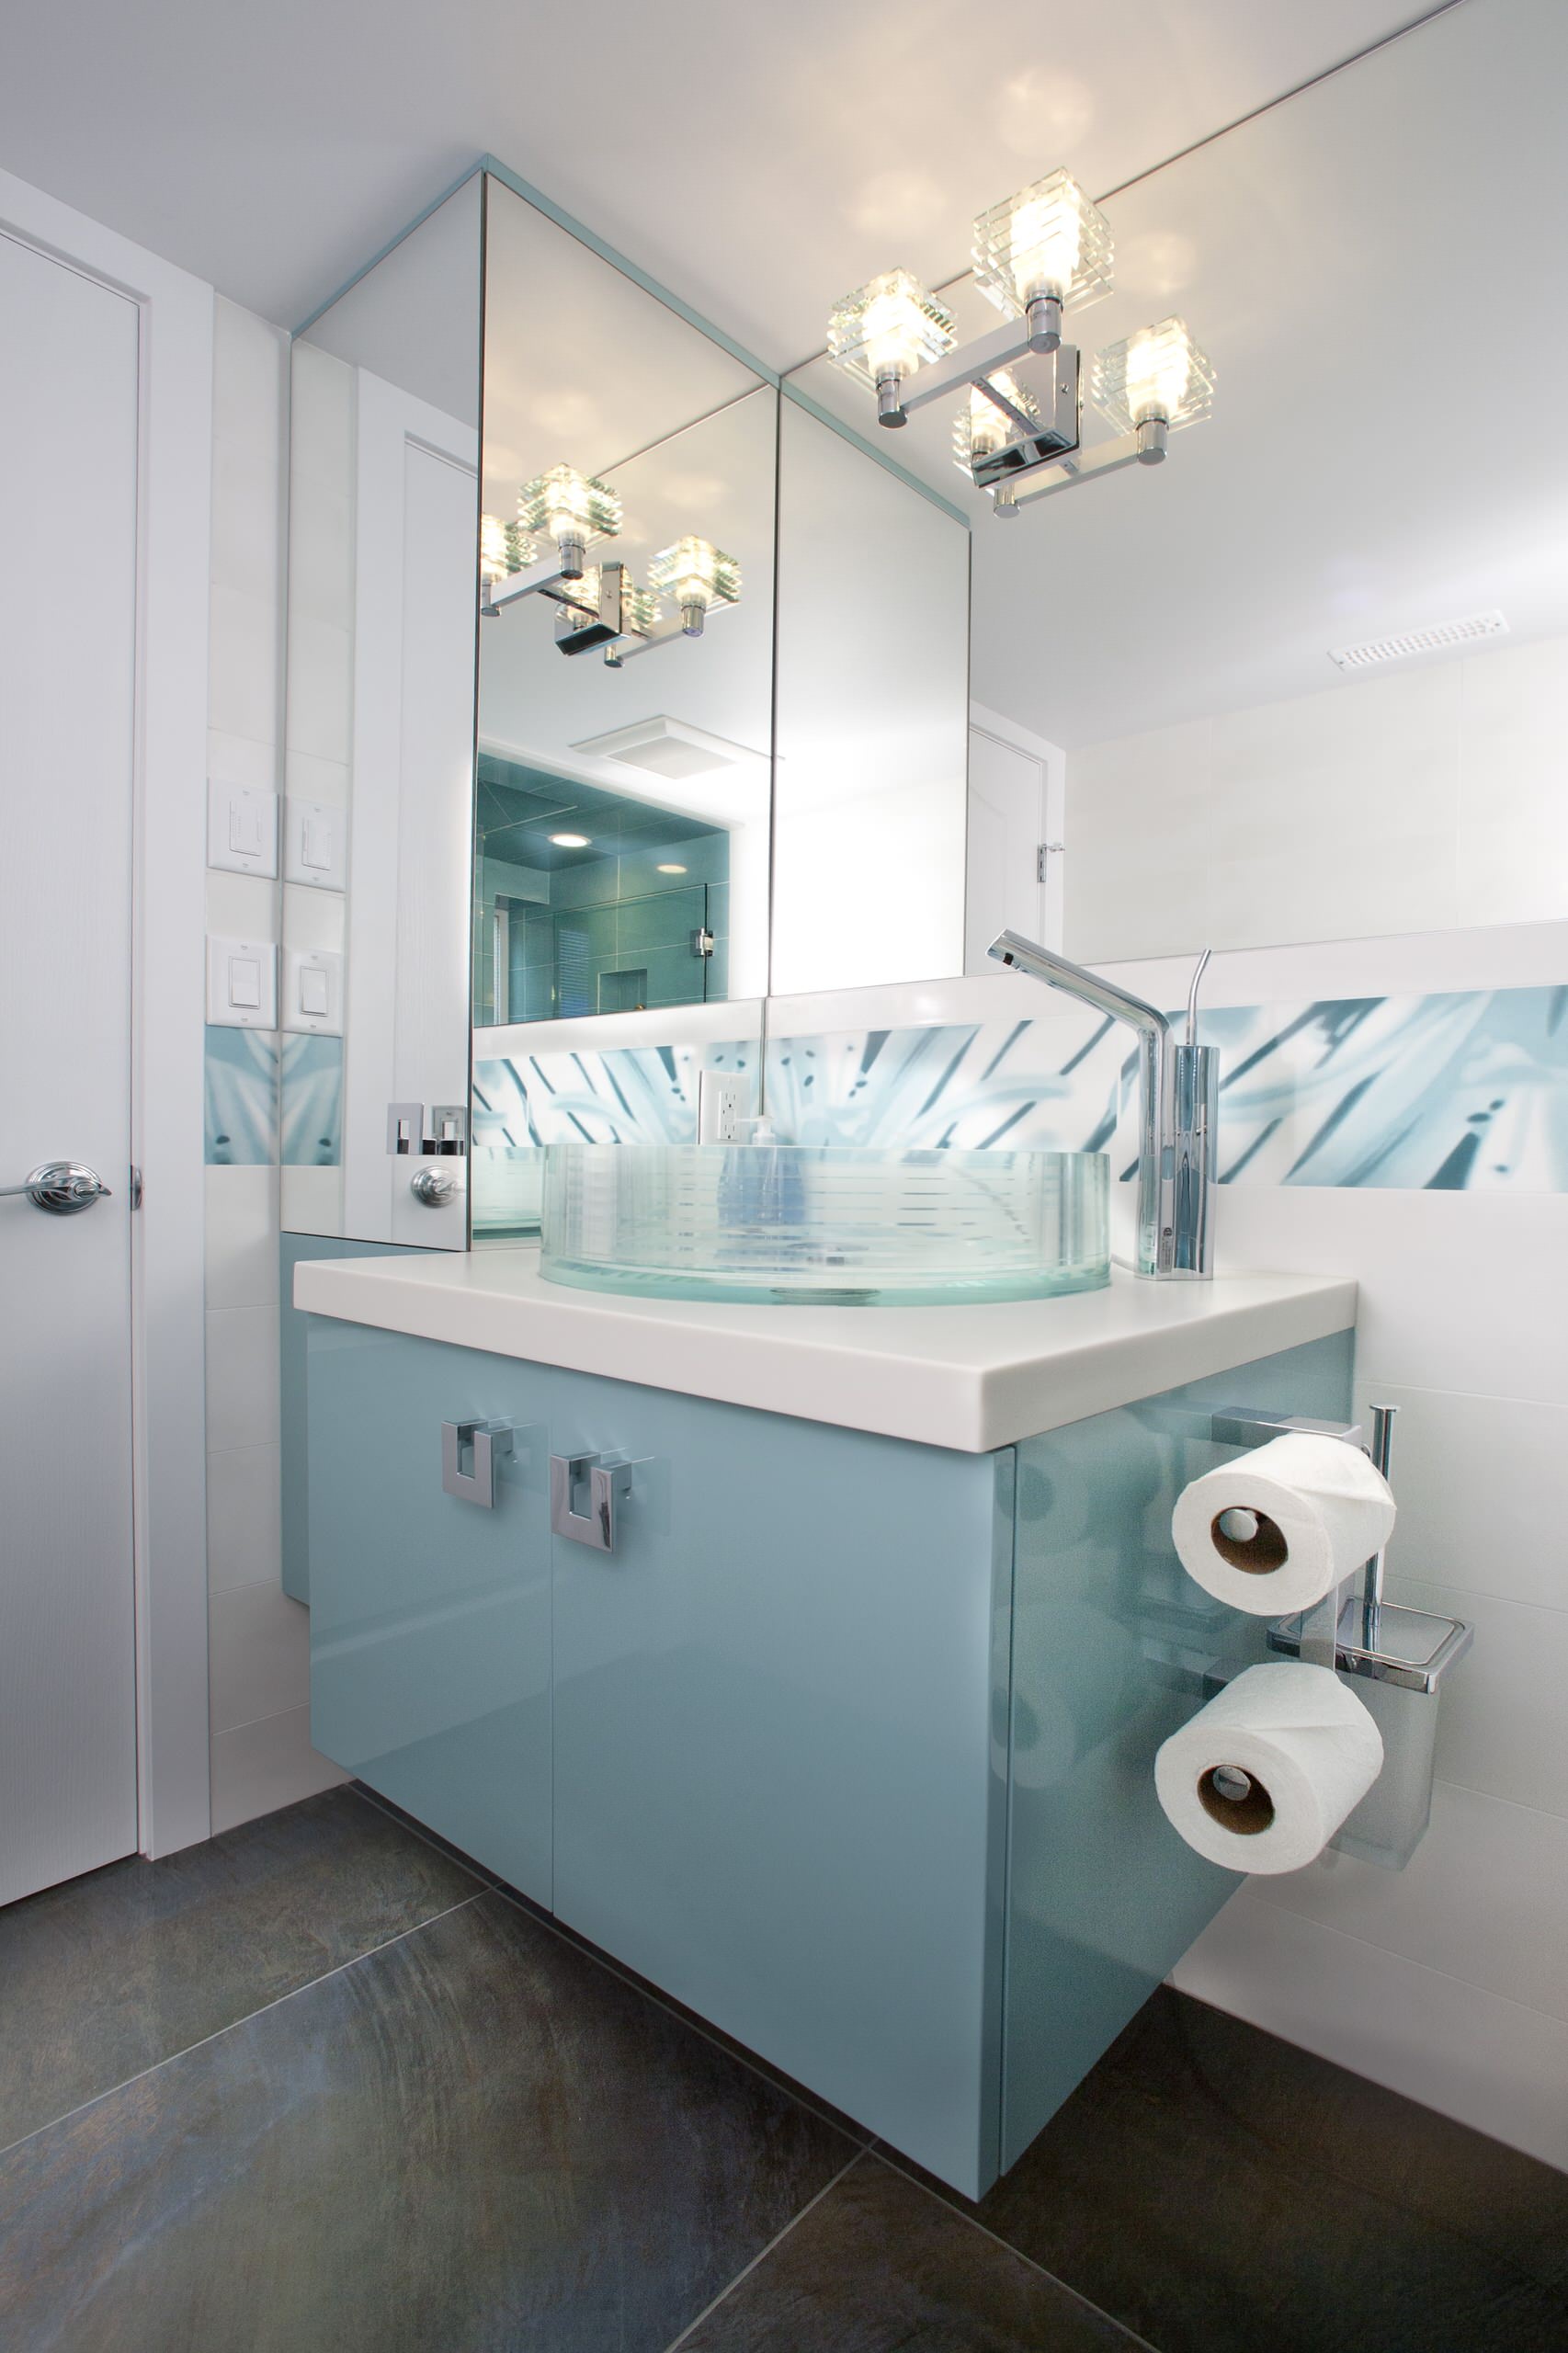 High Gloss Bathroom Cabinets - Photos & Ideas | Houzz